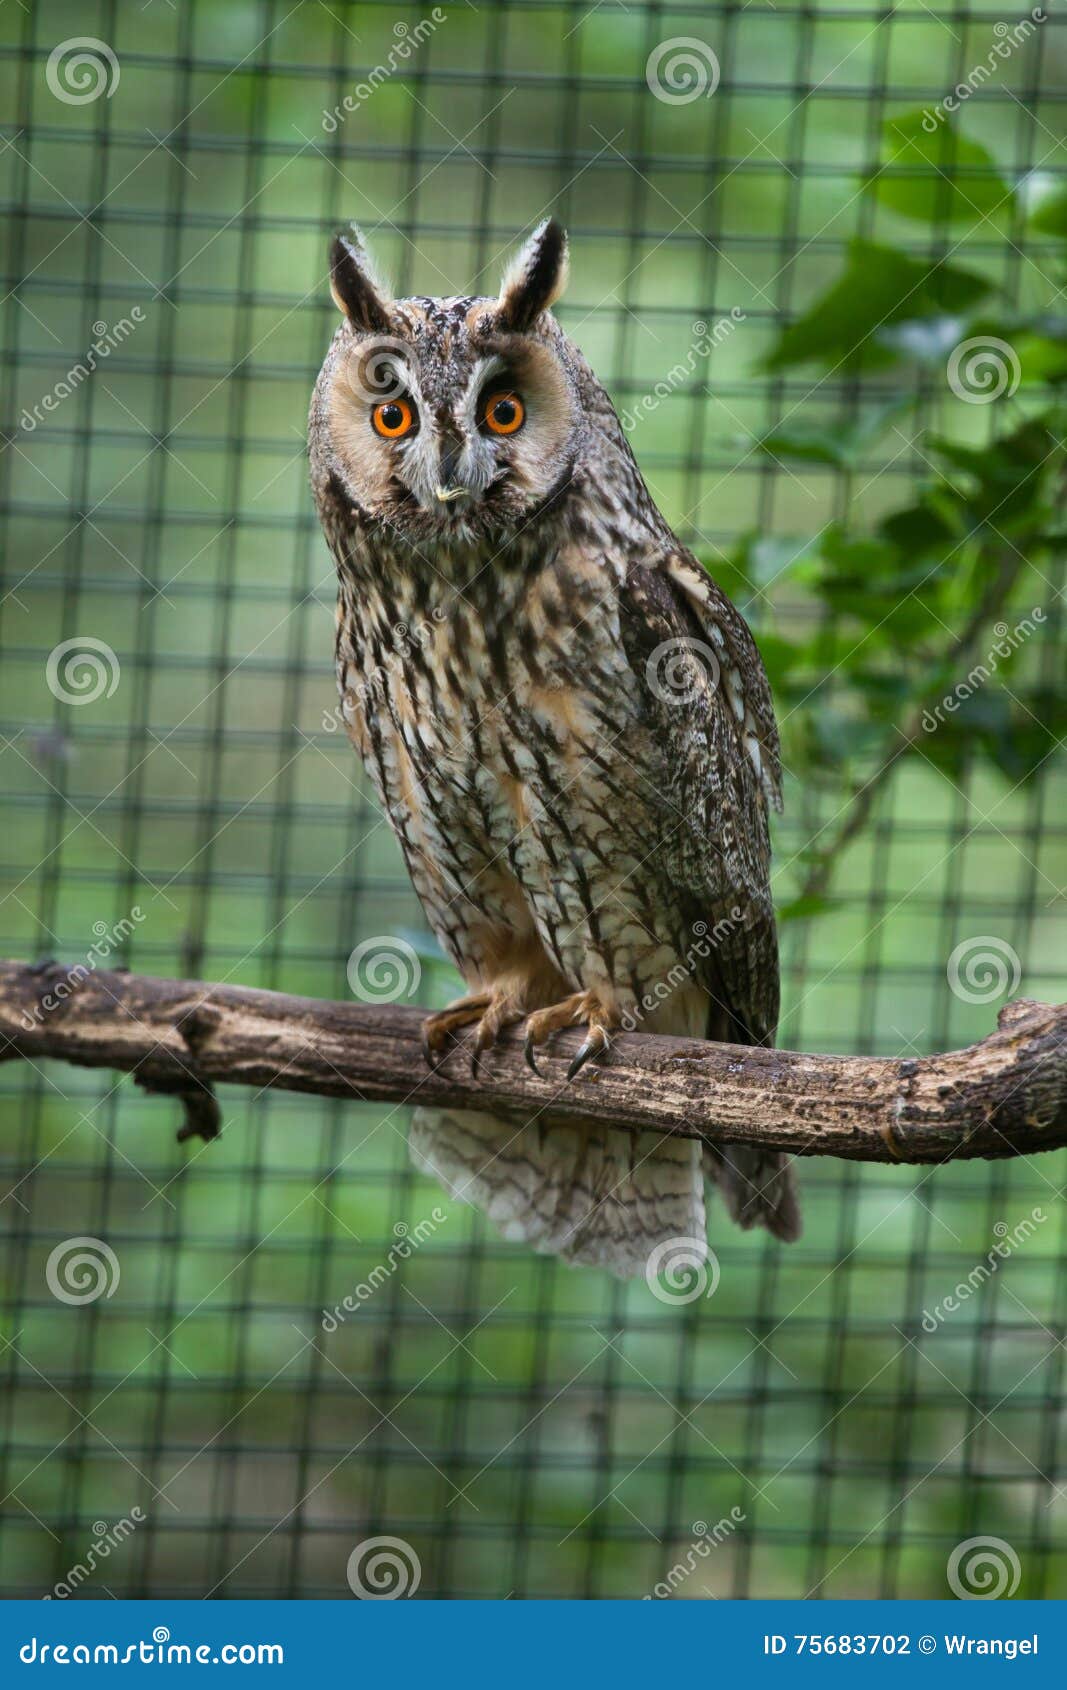 long-eared owl (asio otus).